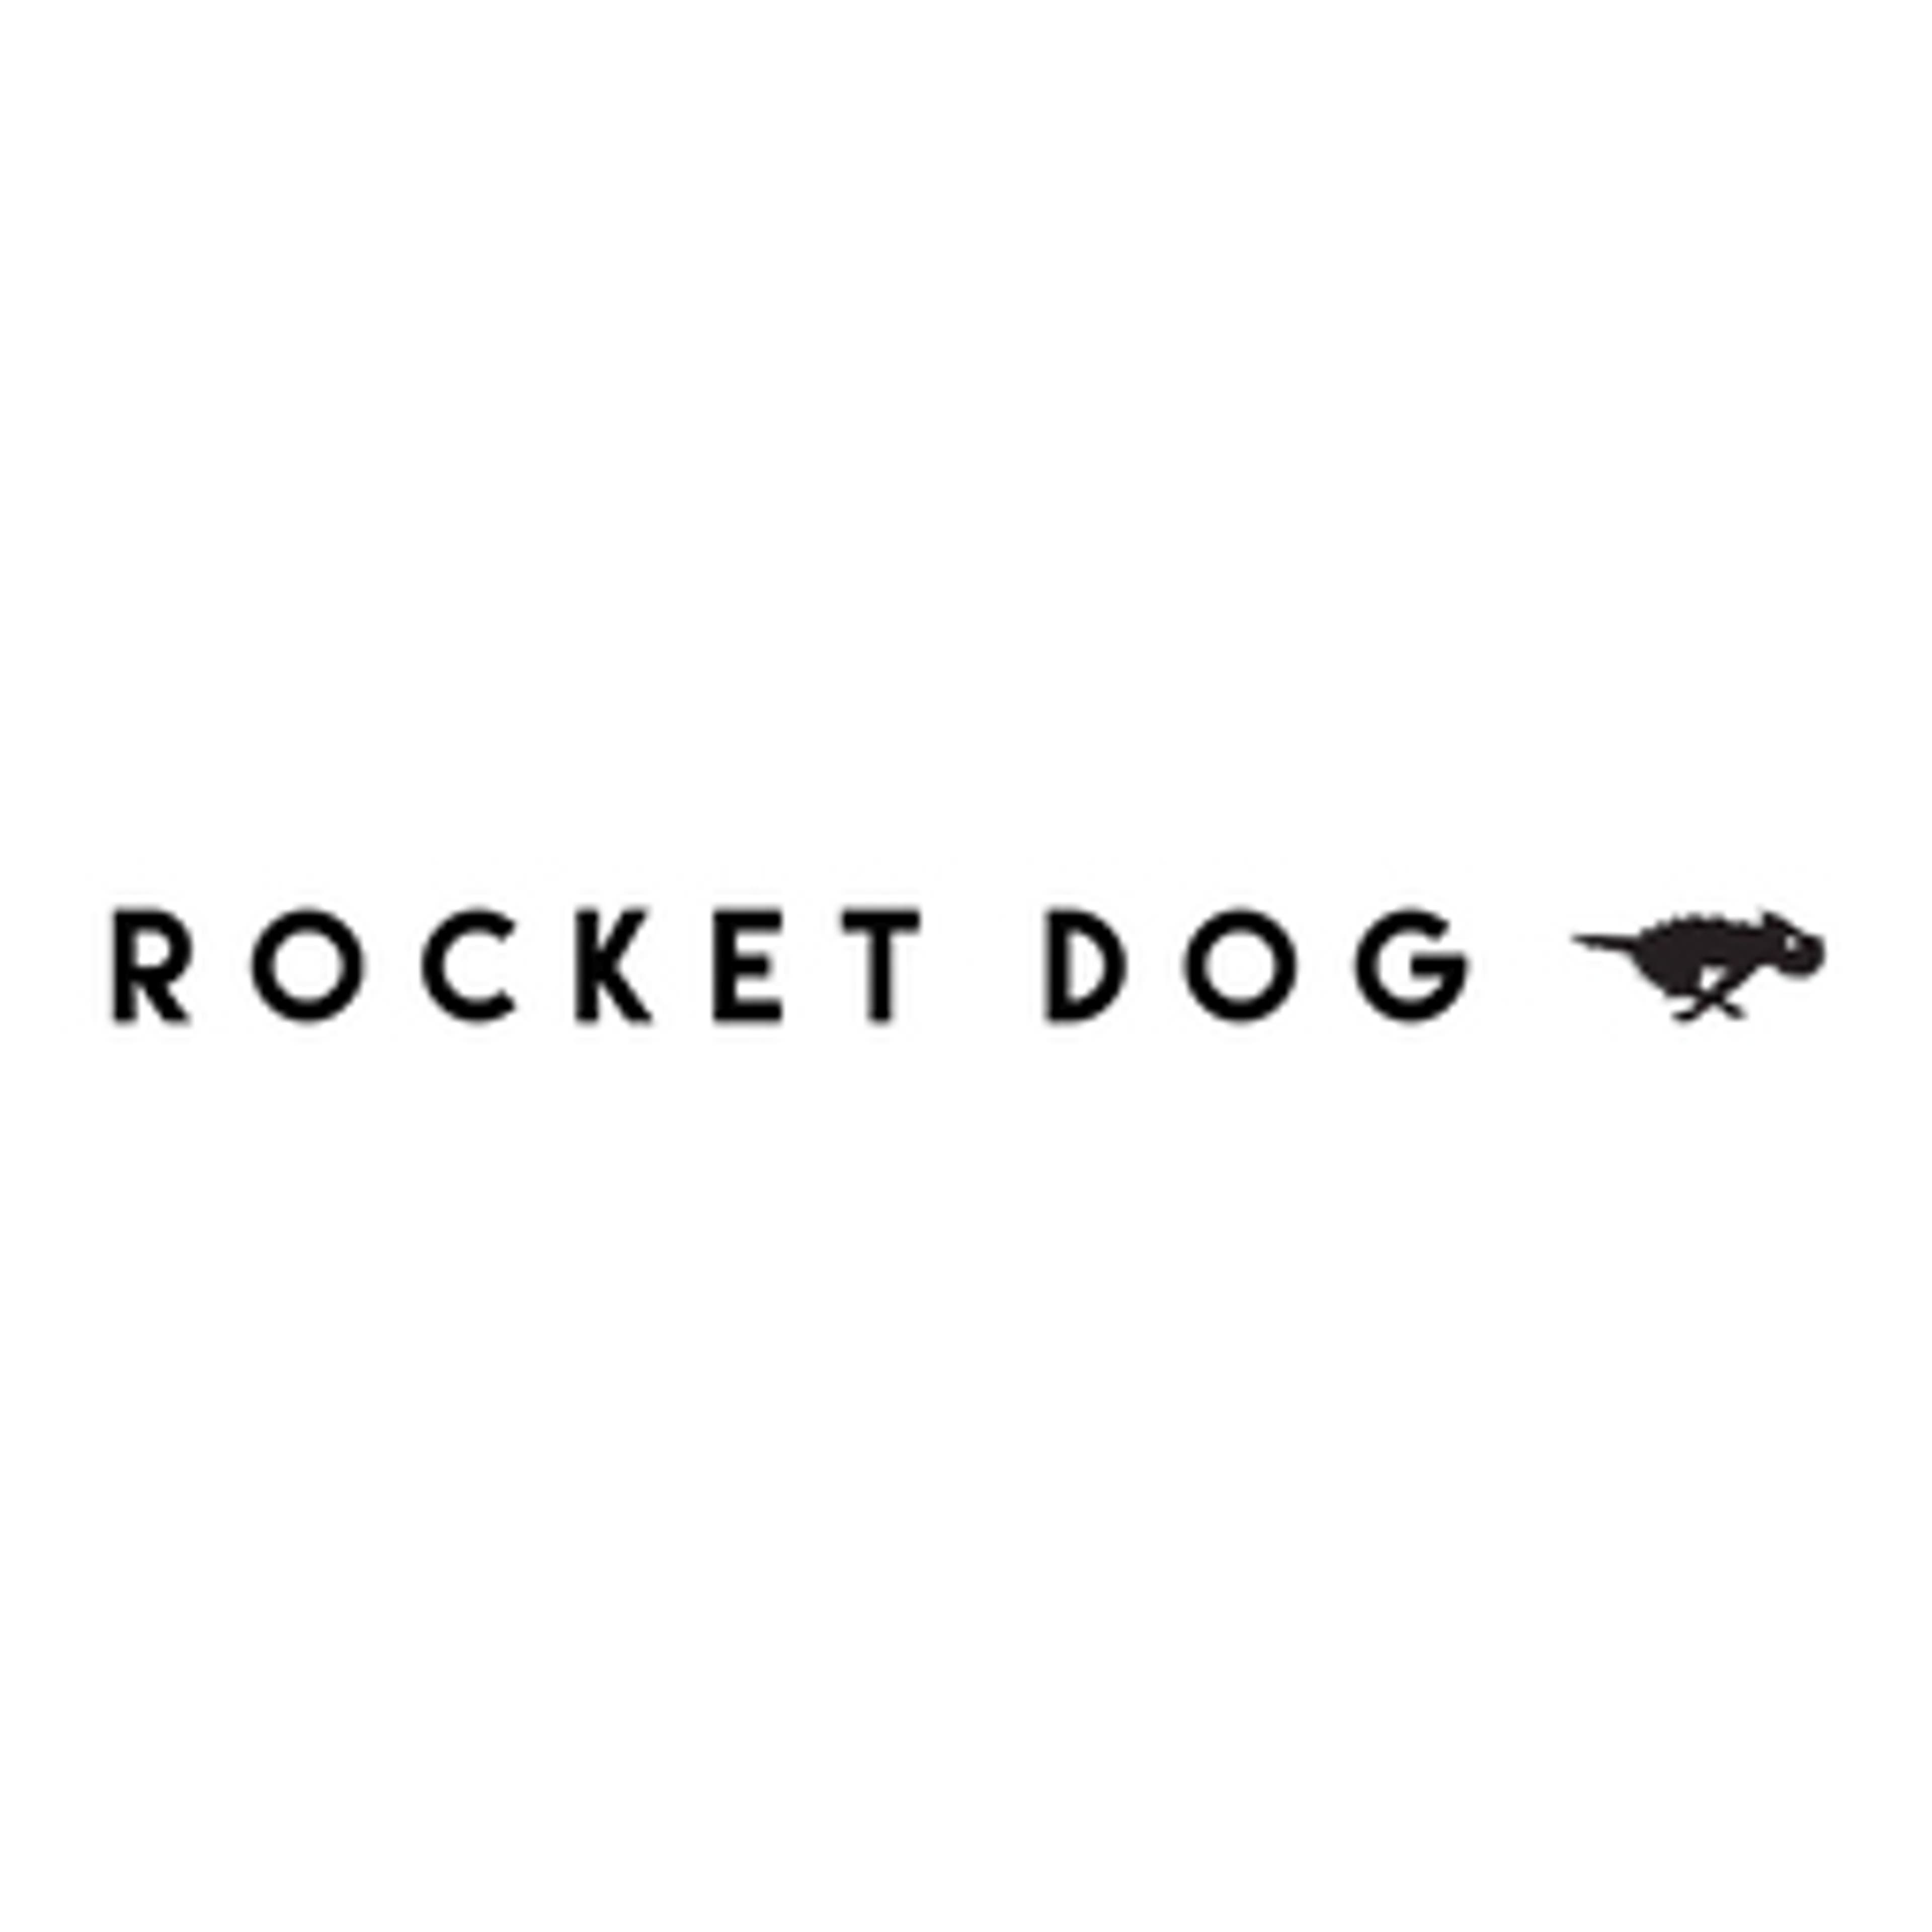  Rocket Dog 